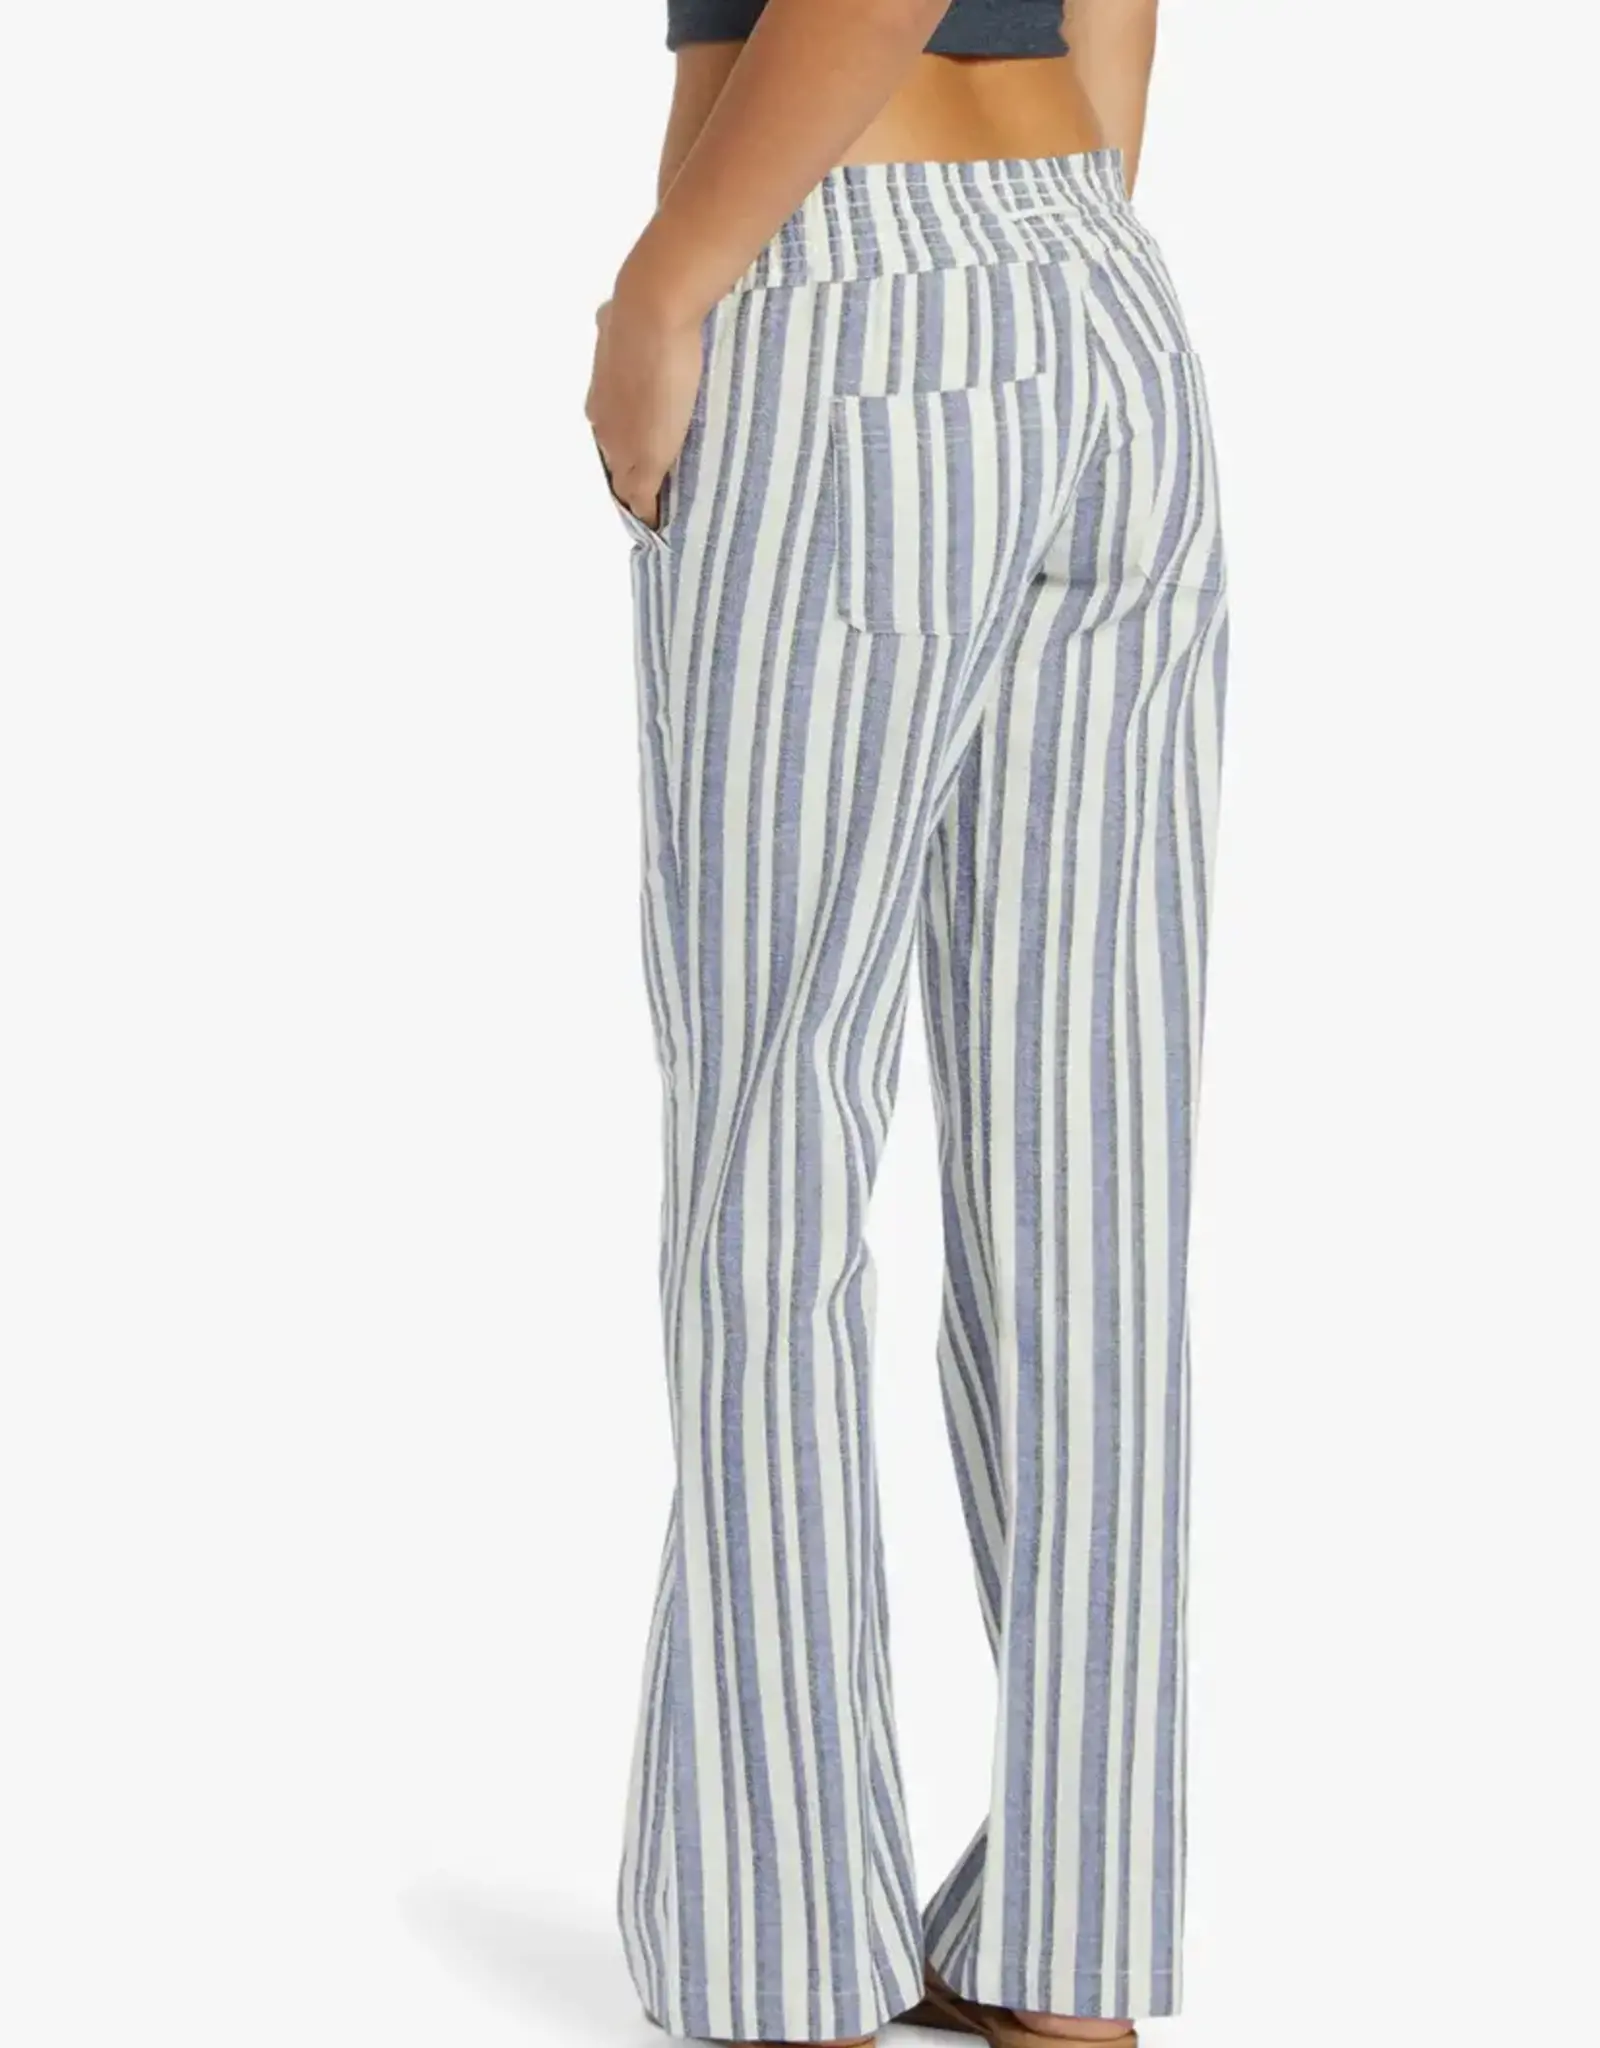 Roxy Roxy Oceanside Pants Bijou Silk Caye Stripe